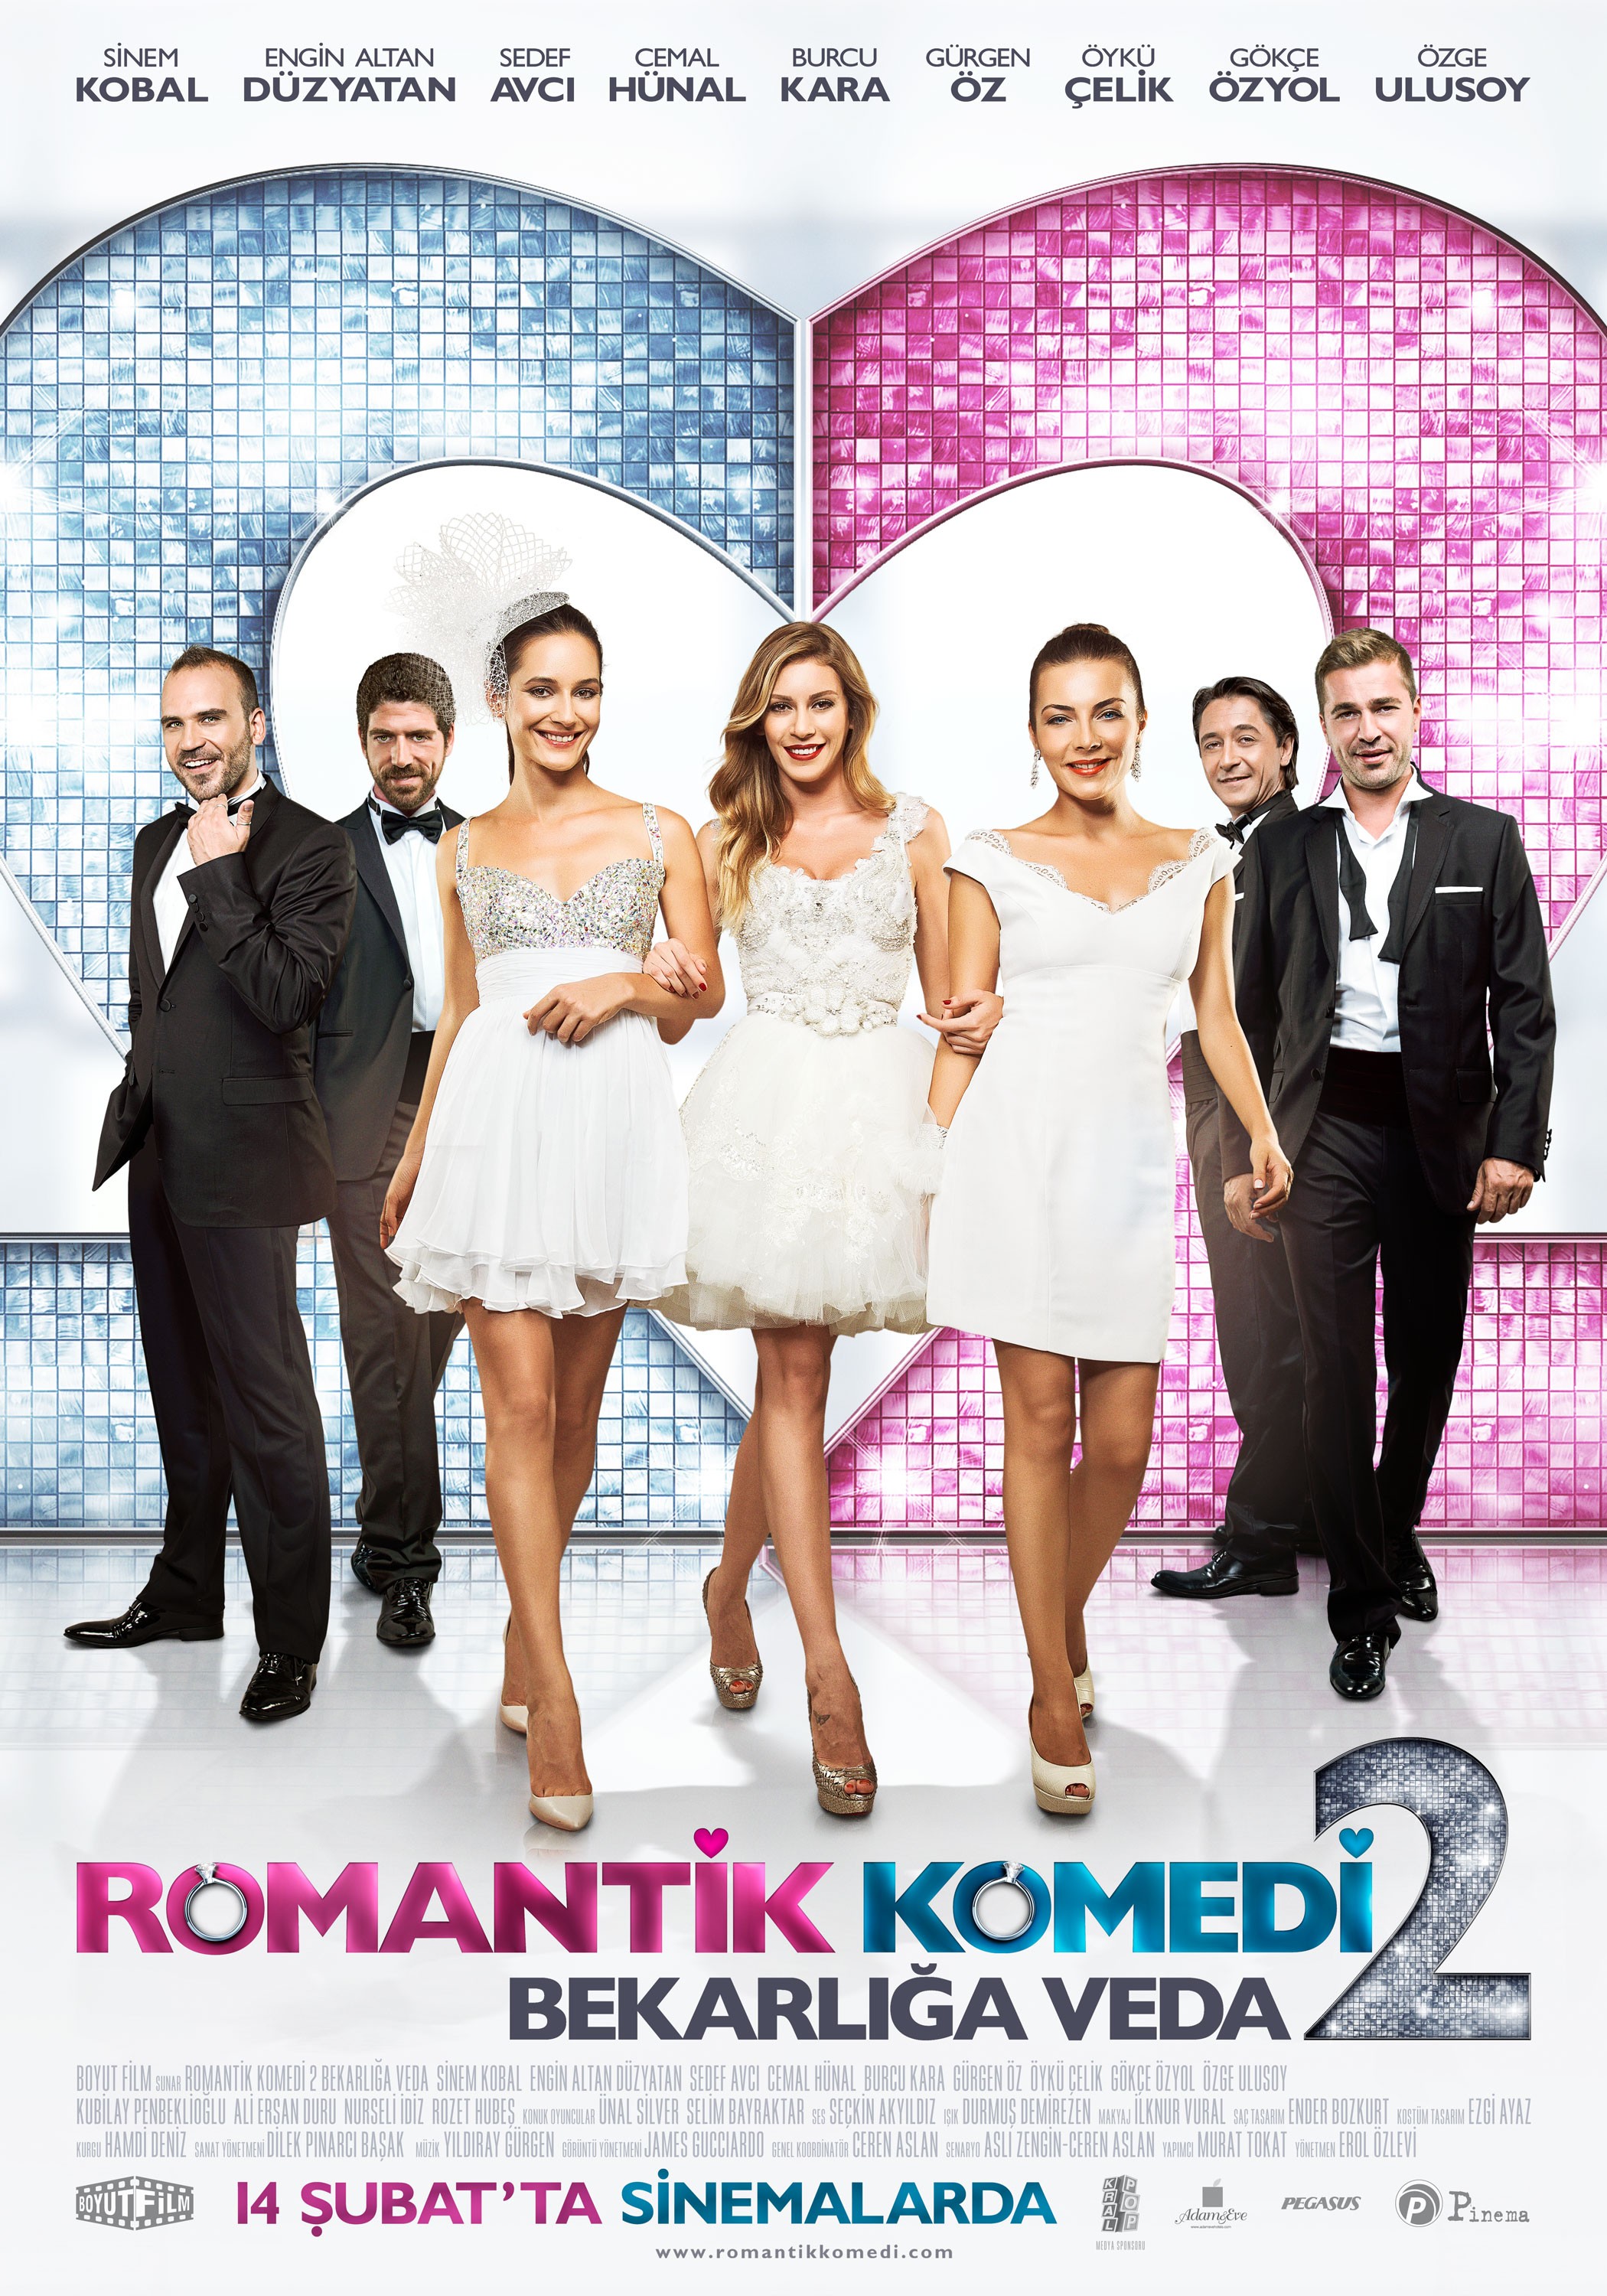 Mega Sized Movie Poster Image for Romantik komedi 2: Bekarliga veda (#1 of 9)